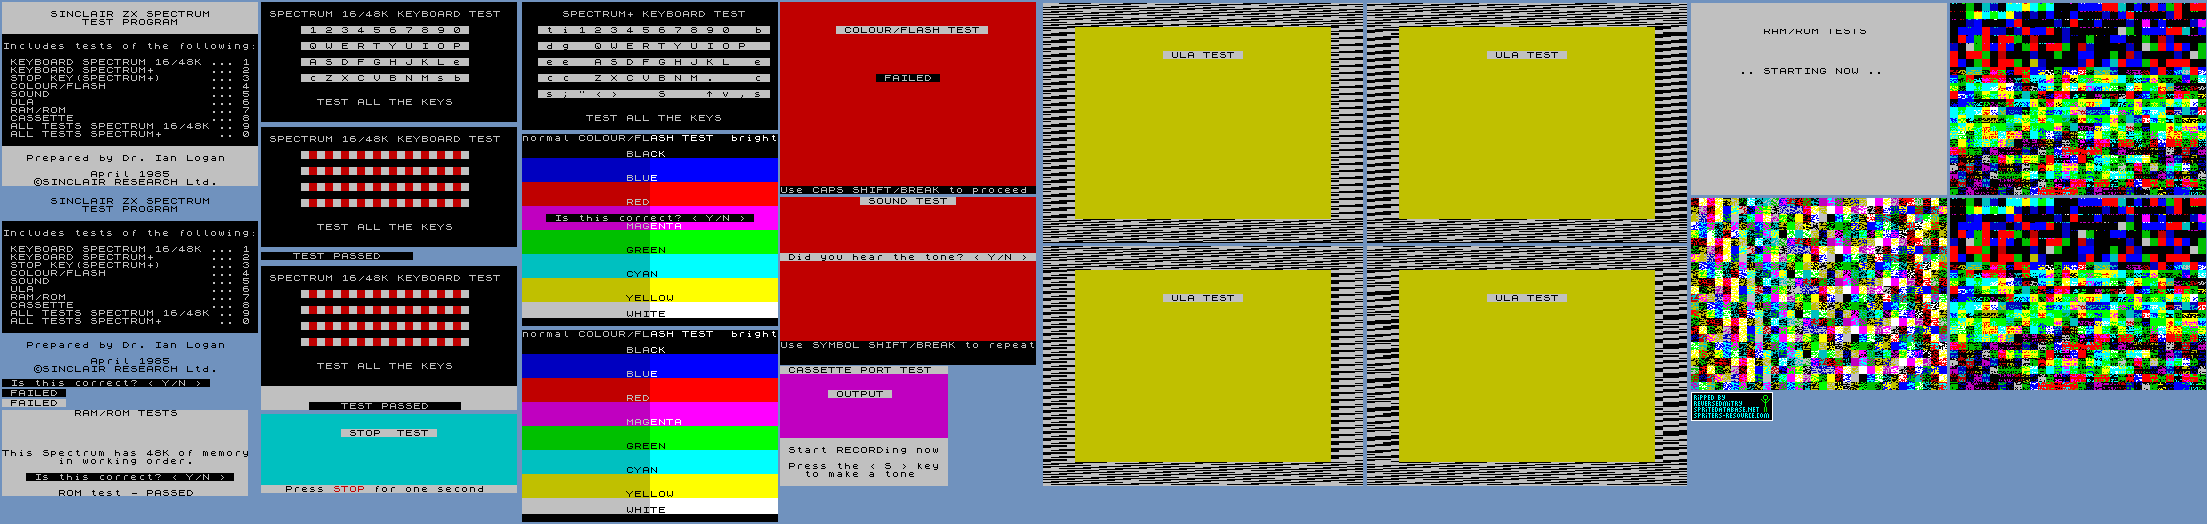 Sinclair ZX Spectrum Test Program - Menu Screens & Tests